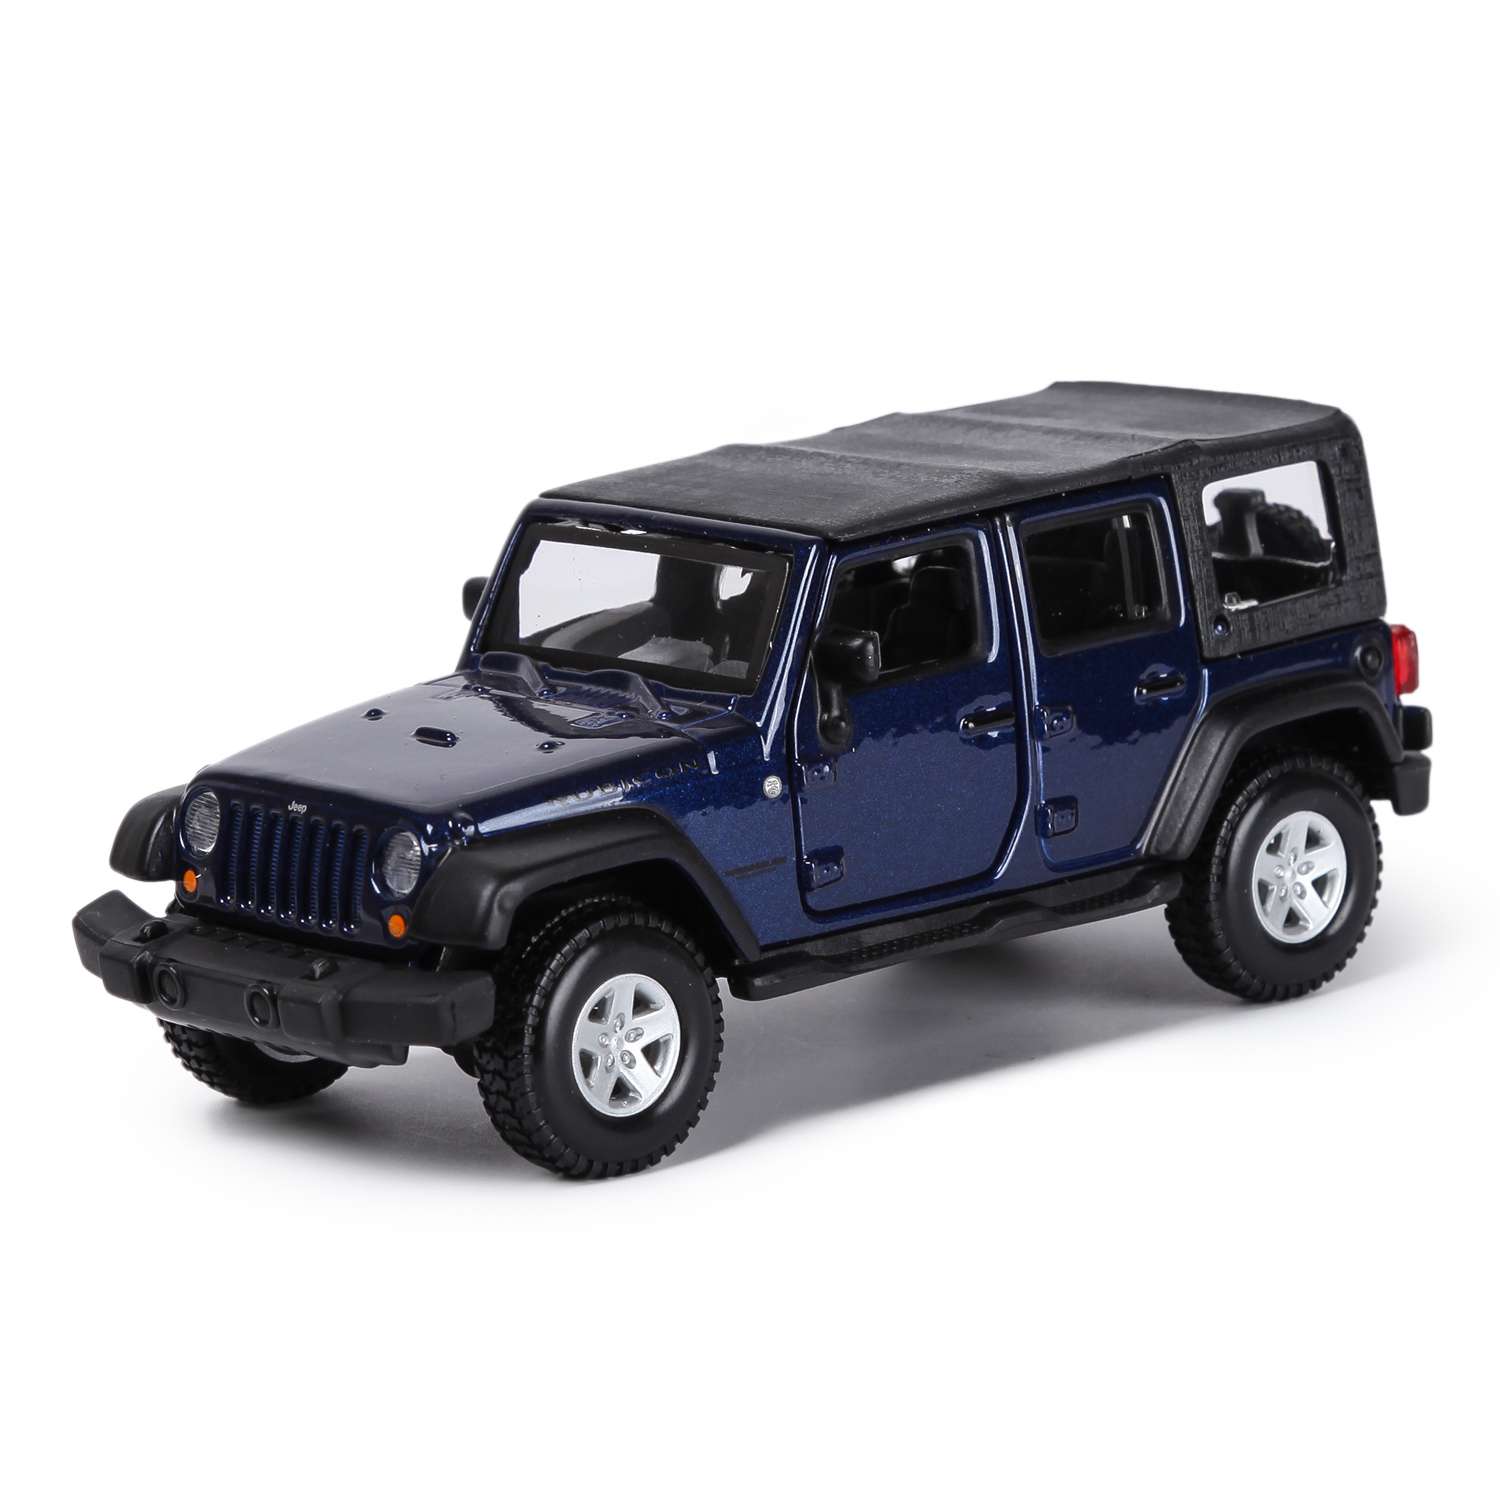 Машина BBurago 1:32 Jeep Wrangler Unlimited Rubicon 18-43012 18-43012 - фото 1